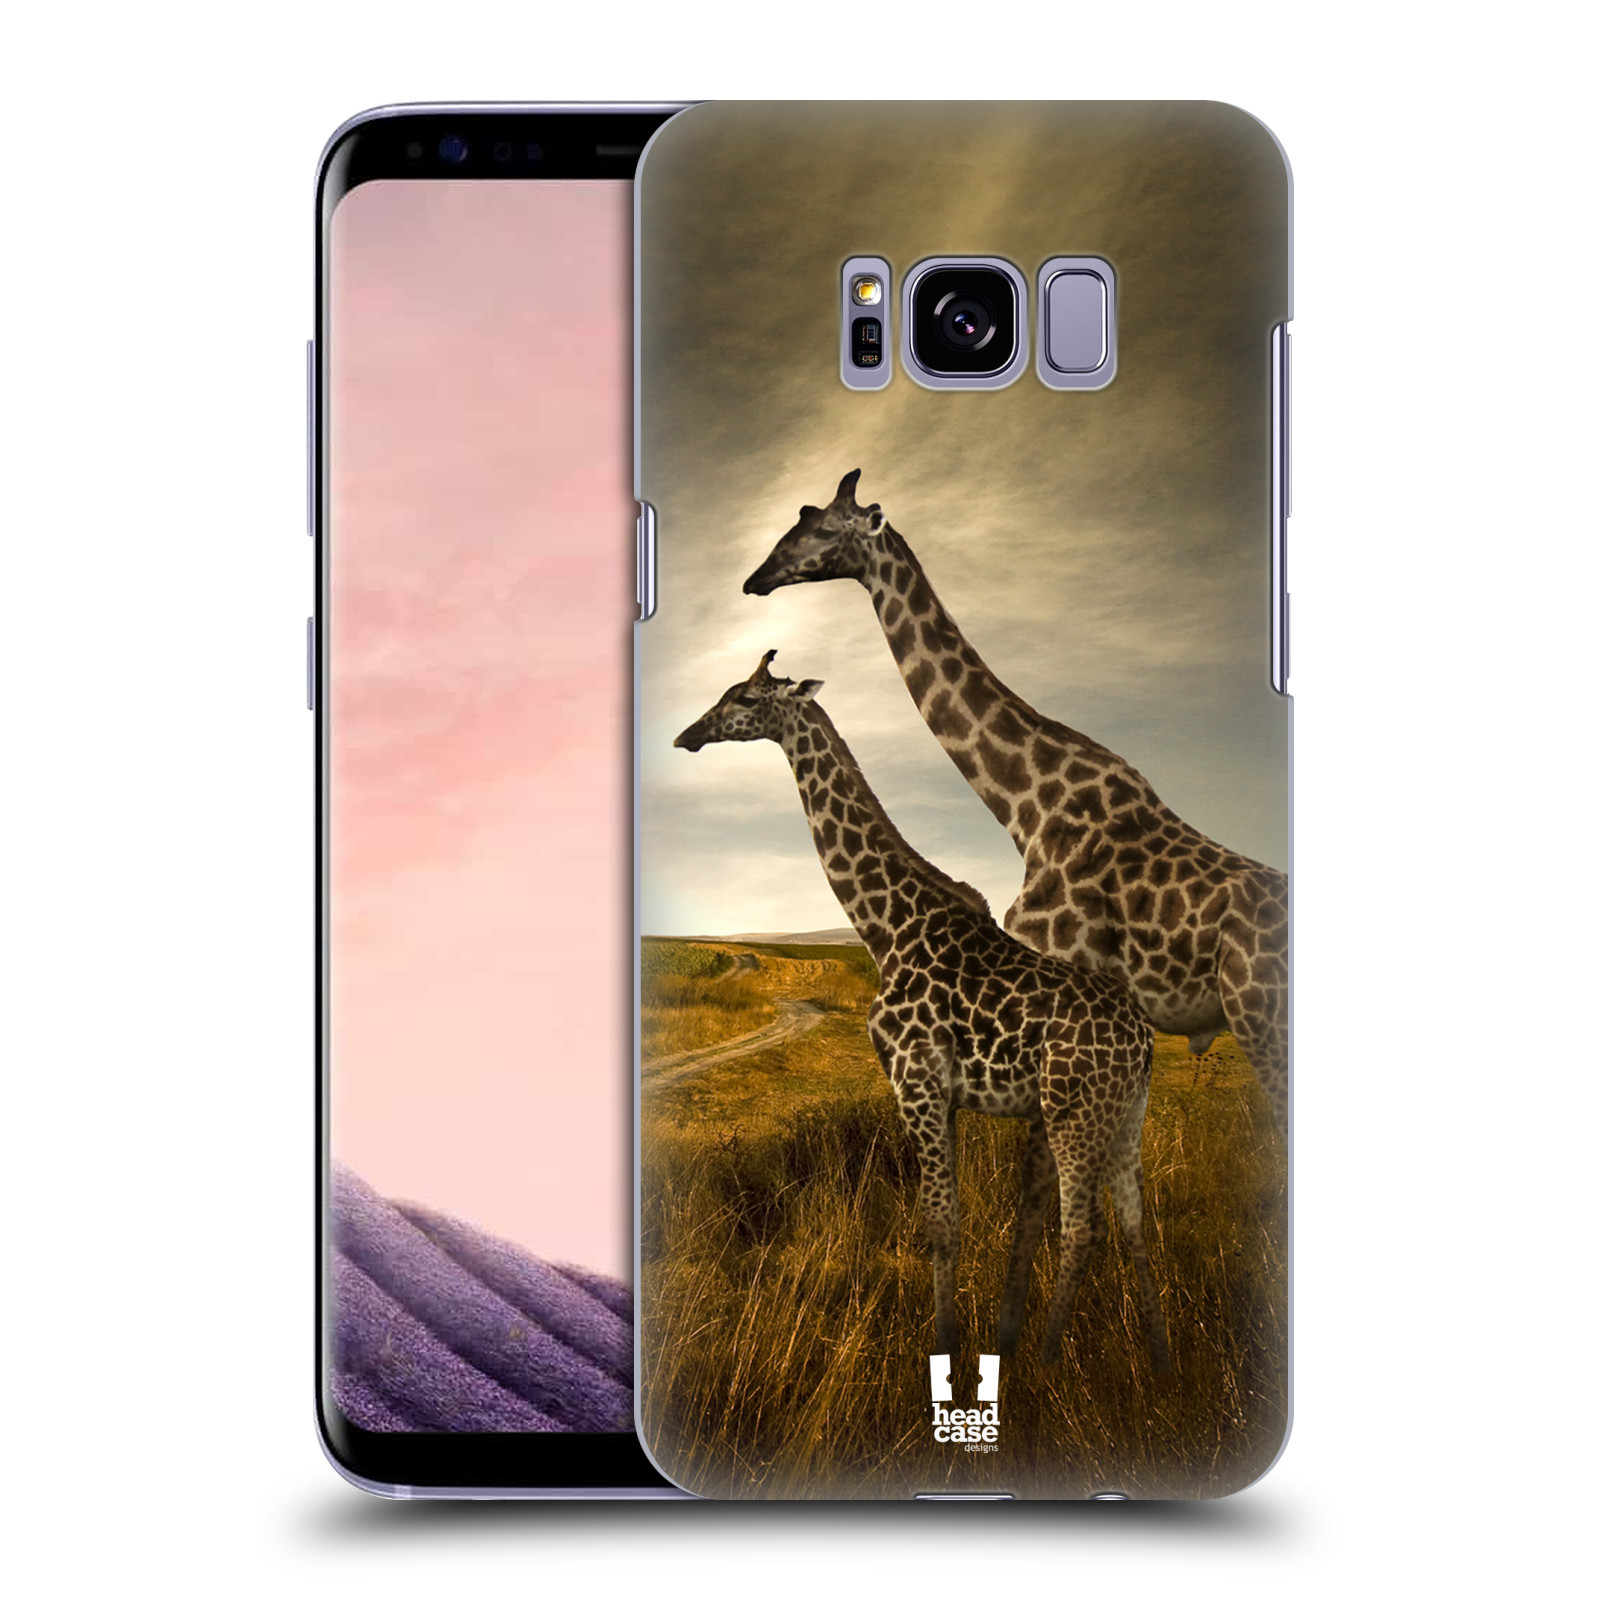 Zadní obal pro mobil Samsung Galaxy S8 PLUS - HEAD CASE - Svět zvířat žirafy